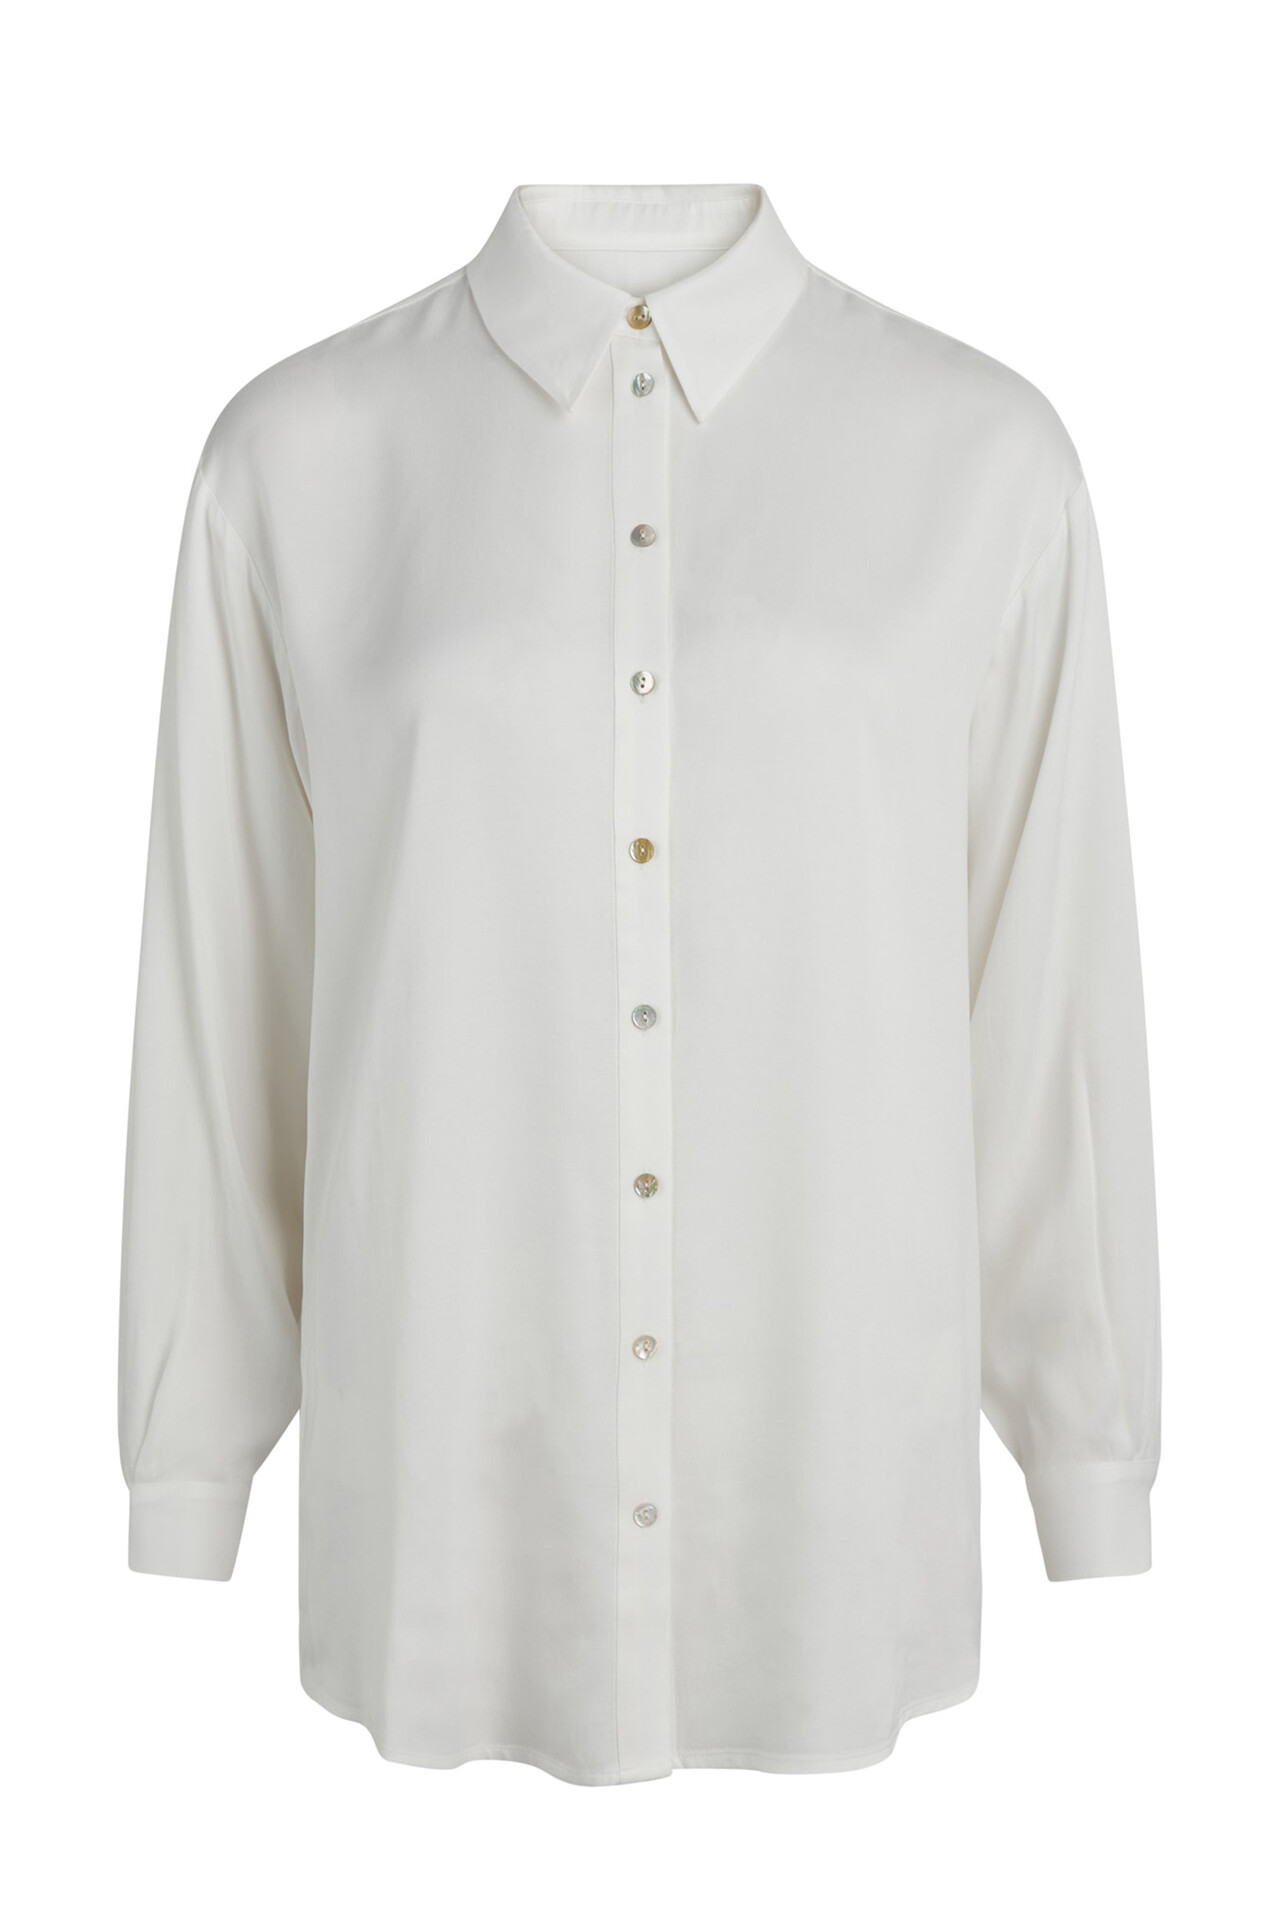 CRÉTON CREmmie skjorte (HVID L)